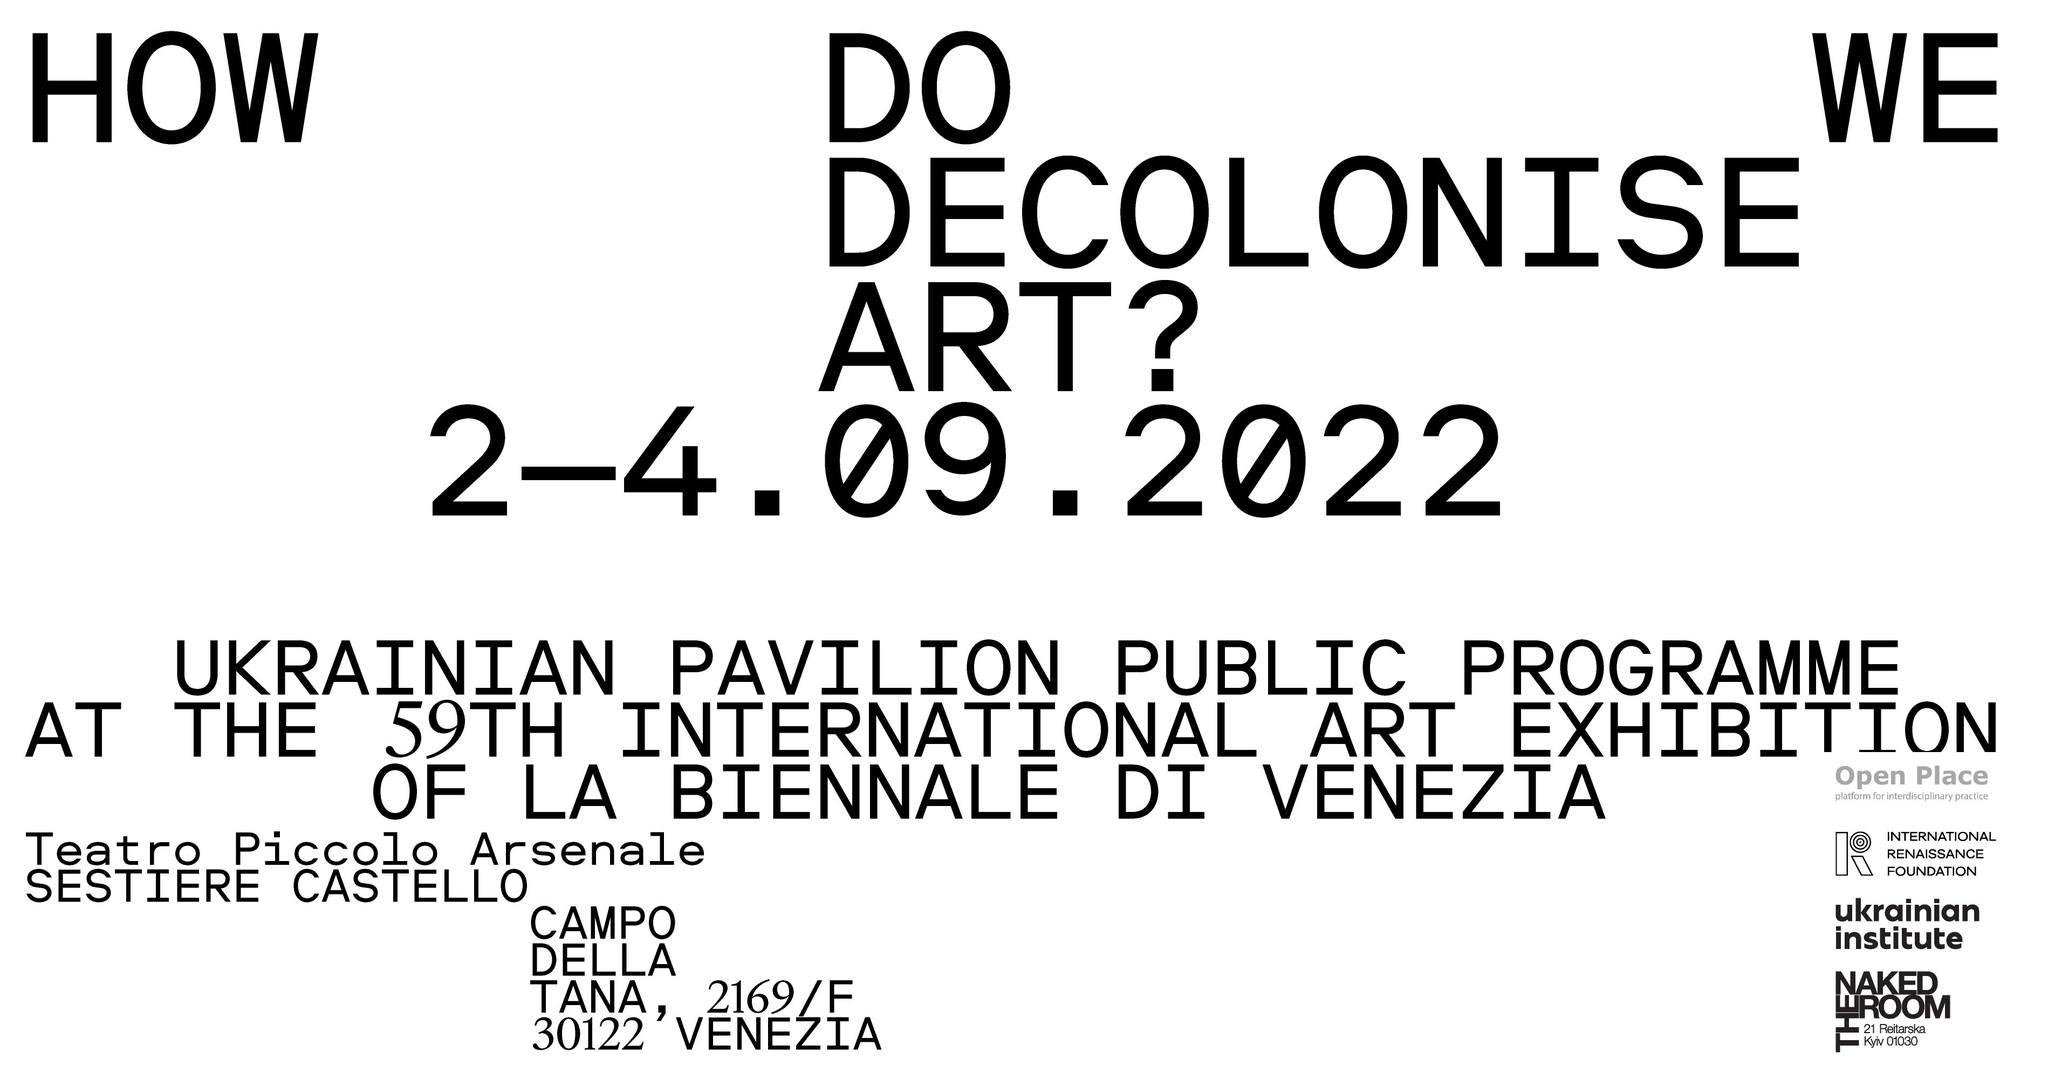 Ukrainian Pavilion Public Programme at the 59th International Art Exhibition of La Biennale di Venezia: Decolonising Art. Beyond the Obvious